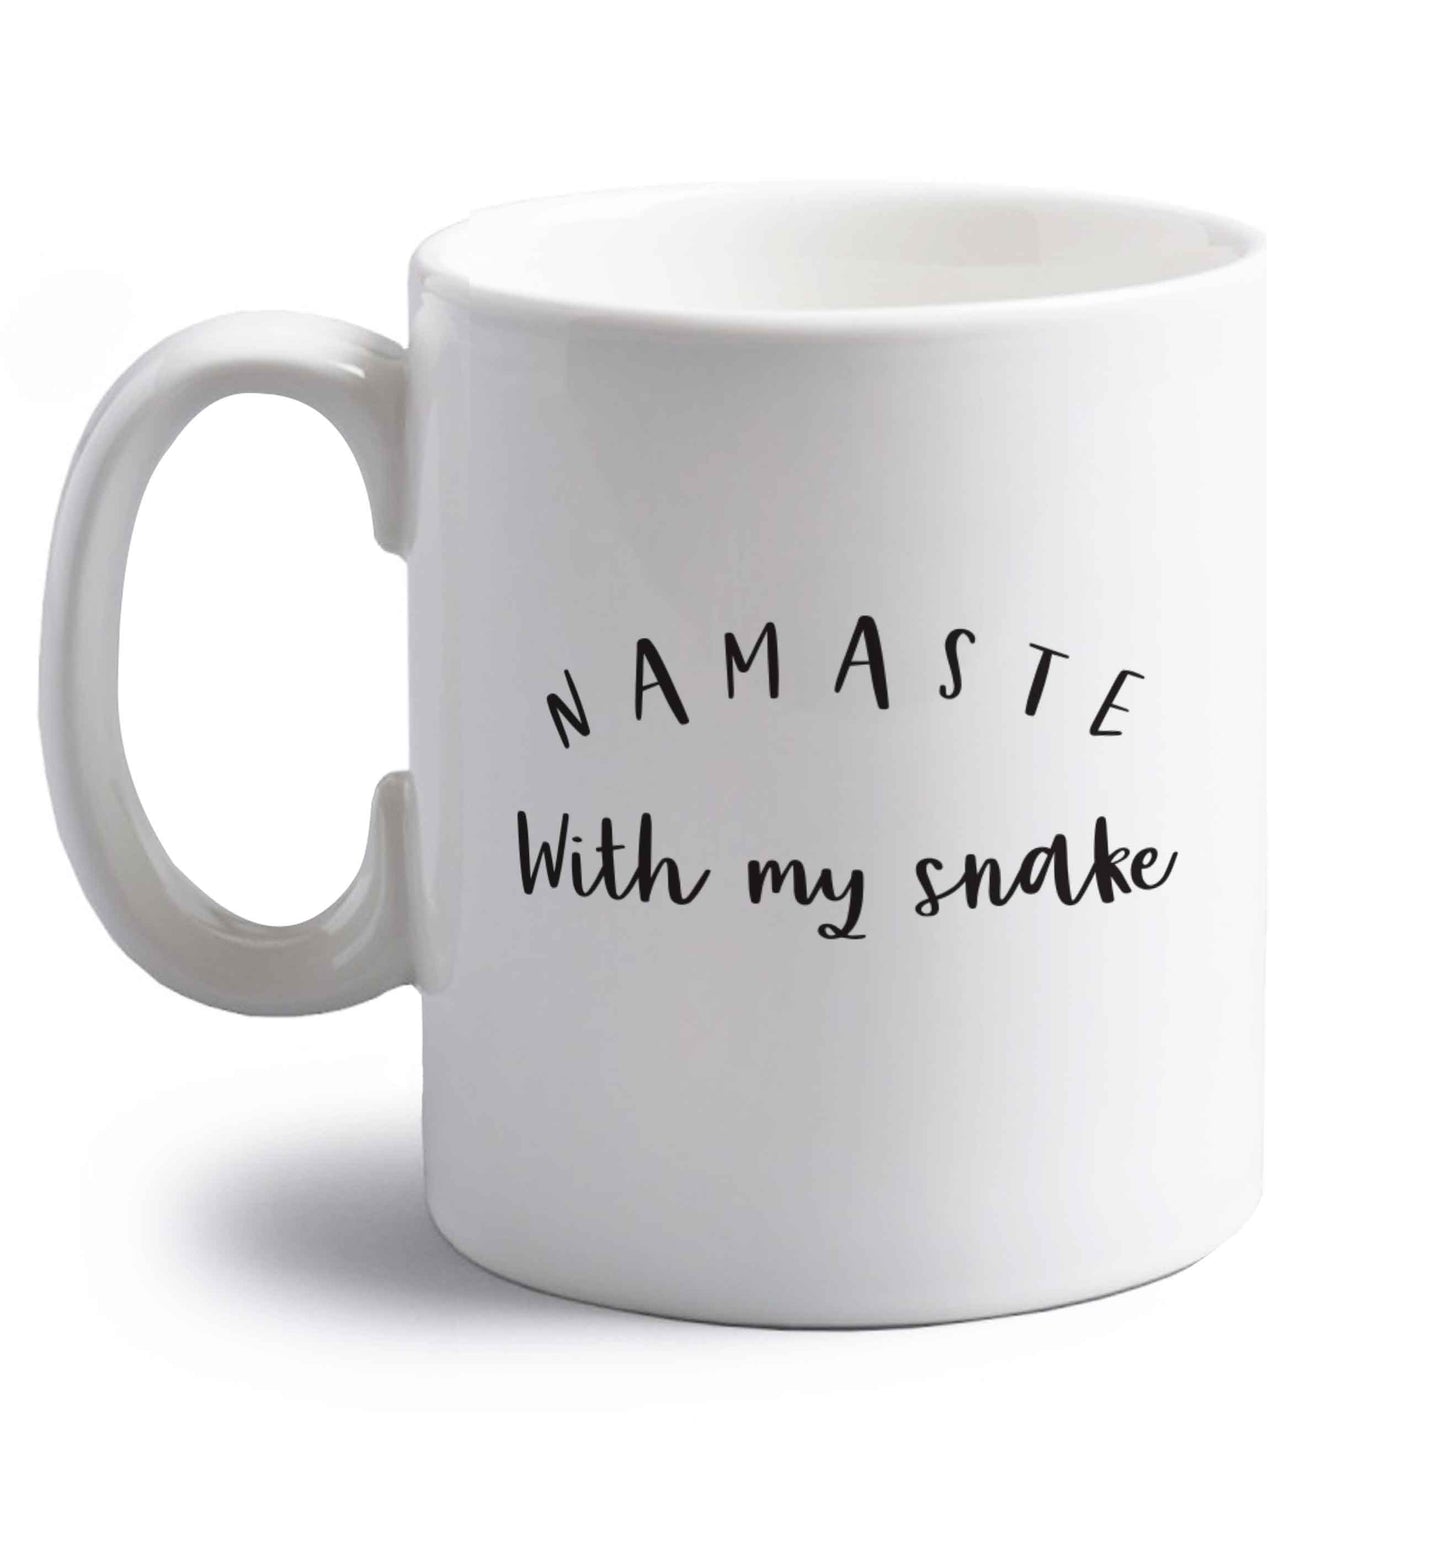 Namaste with my snake right handed white ceramic mug 